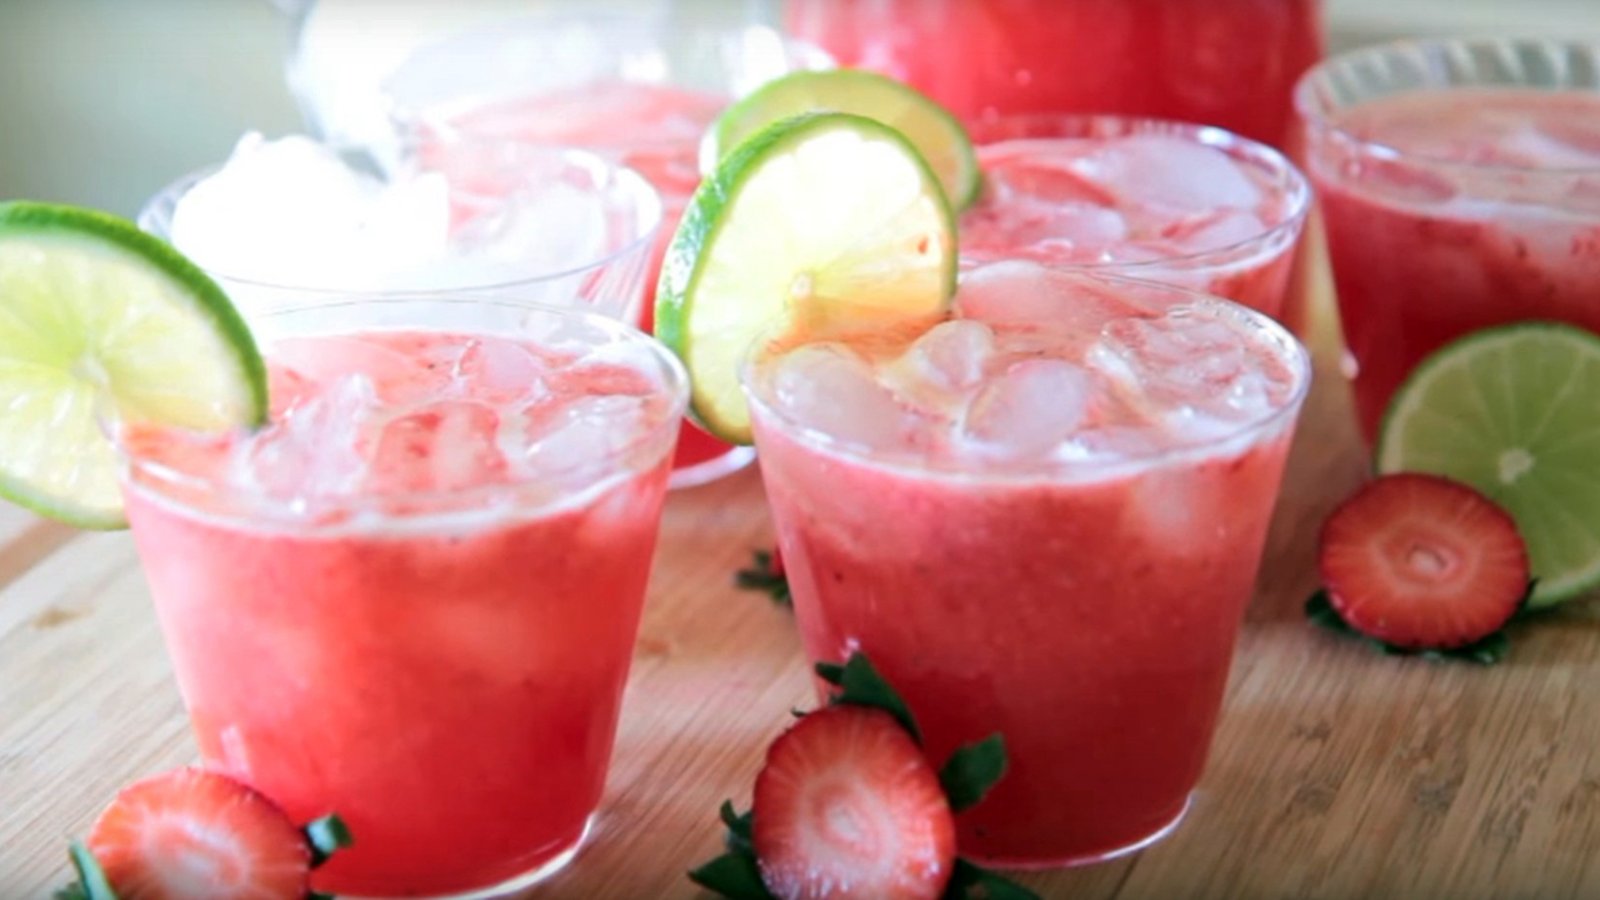 Le margarita aux fraises... Le cocktail parfait pour ta prochaine soirée pompette!